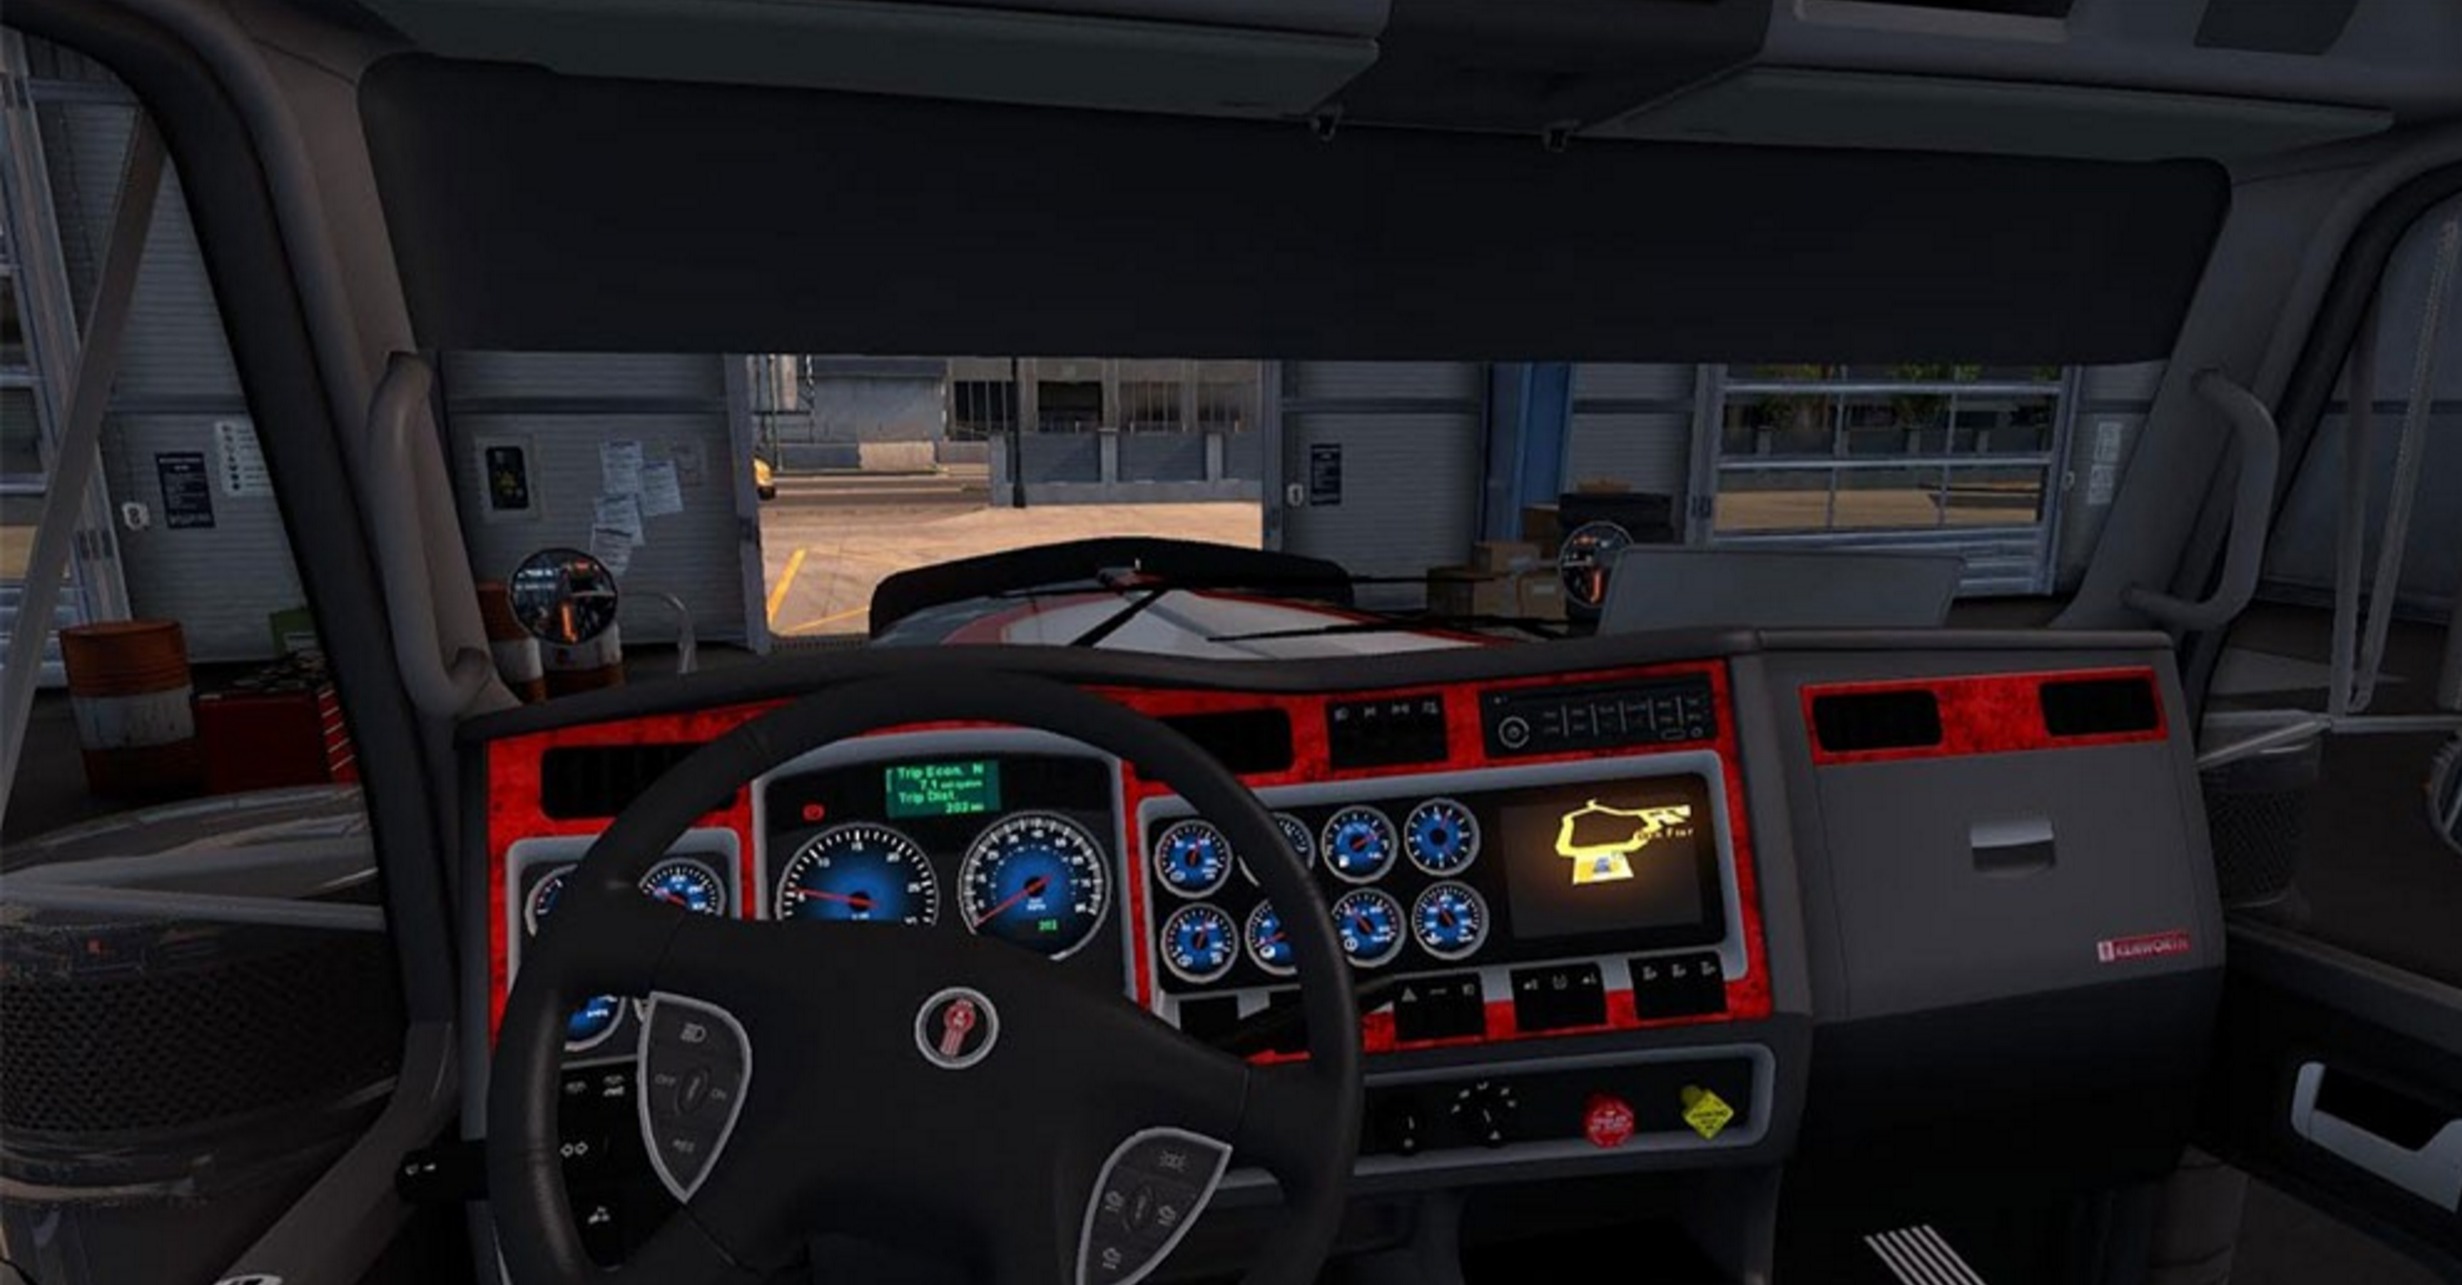 Kenworth W900 Dashboard Blue Mod Ats Mod American Truck Simulator Mod